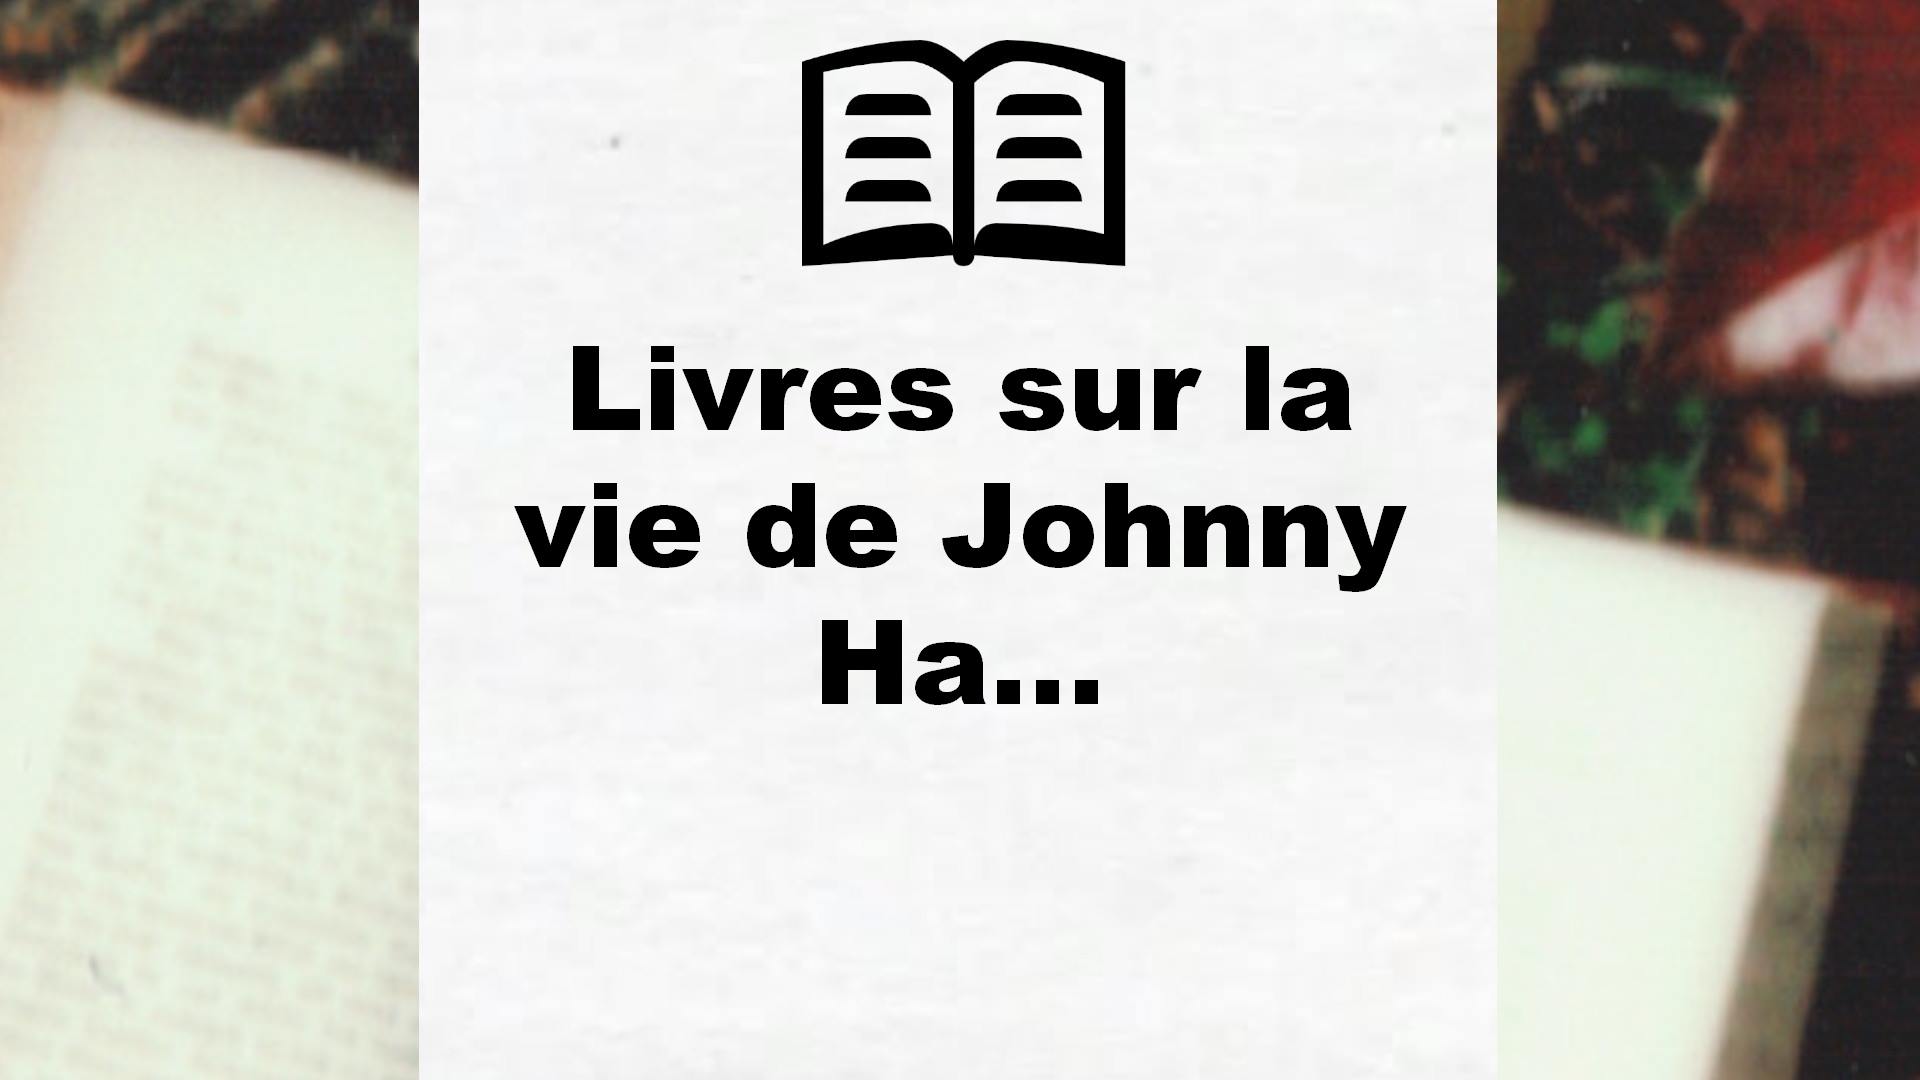 Livres sur la vie de Johnny Hallyday